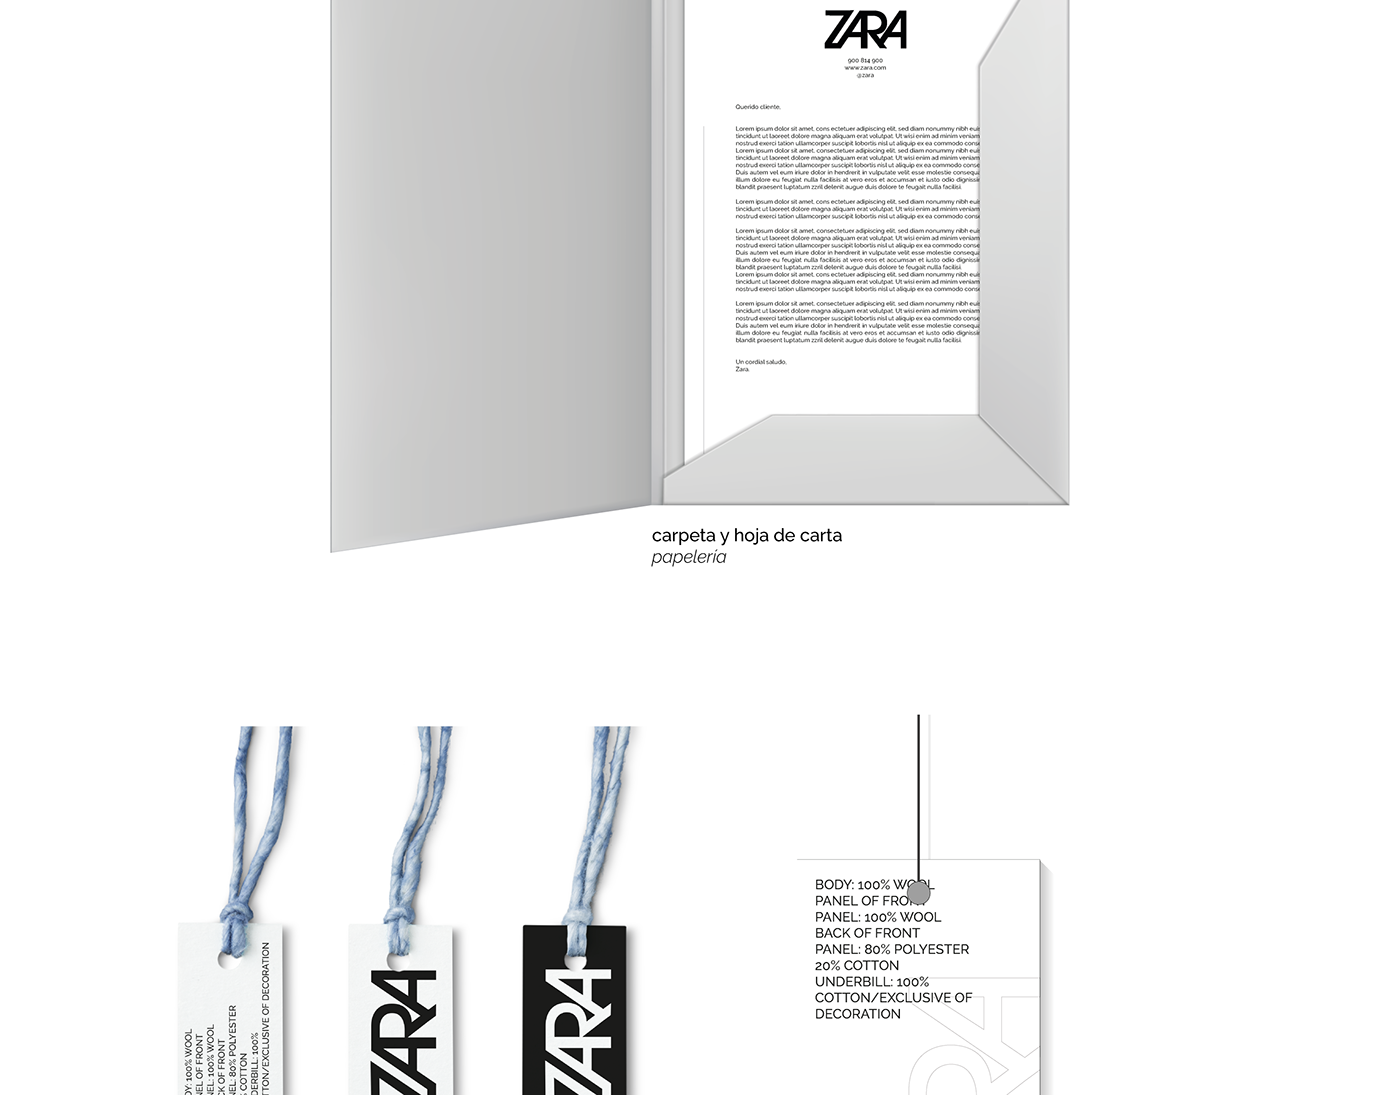 zara Identidad Corporativa Manual de Marca diseñodelogo diseñografico graphicdesign corporateidentity